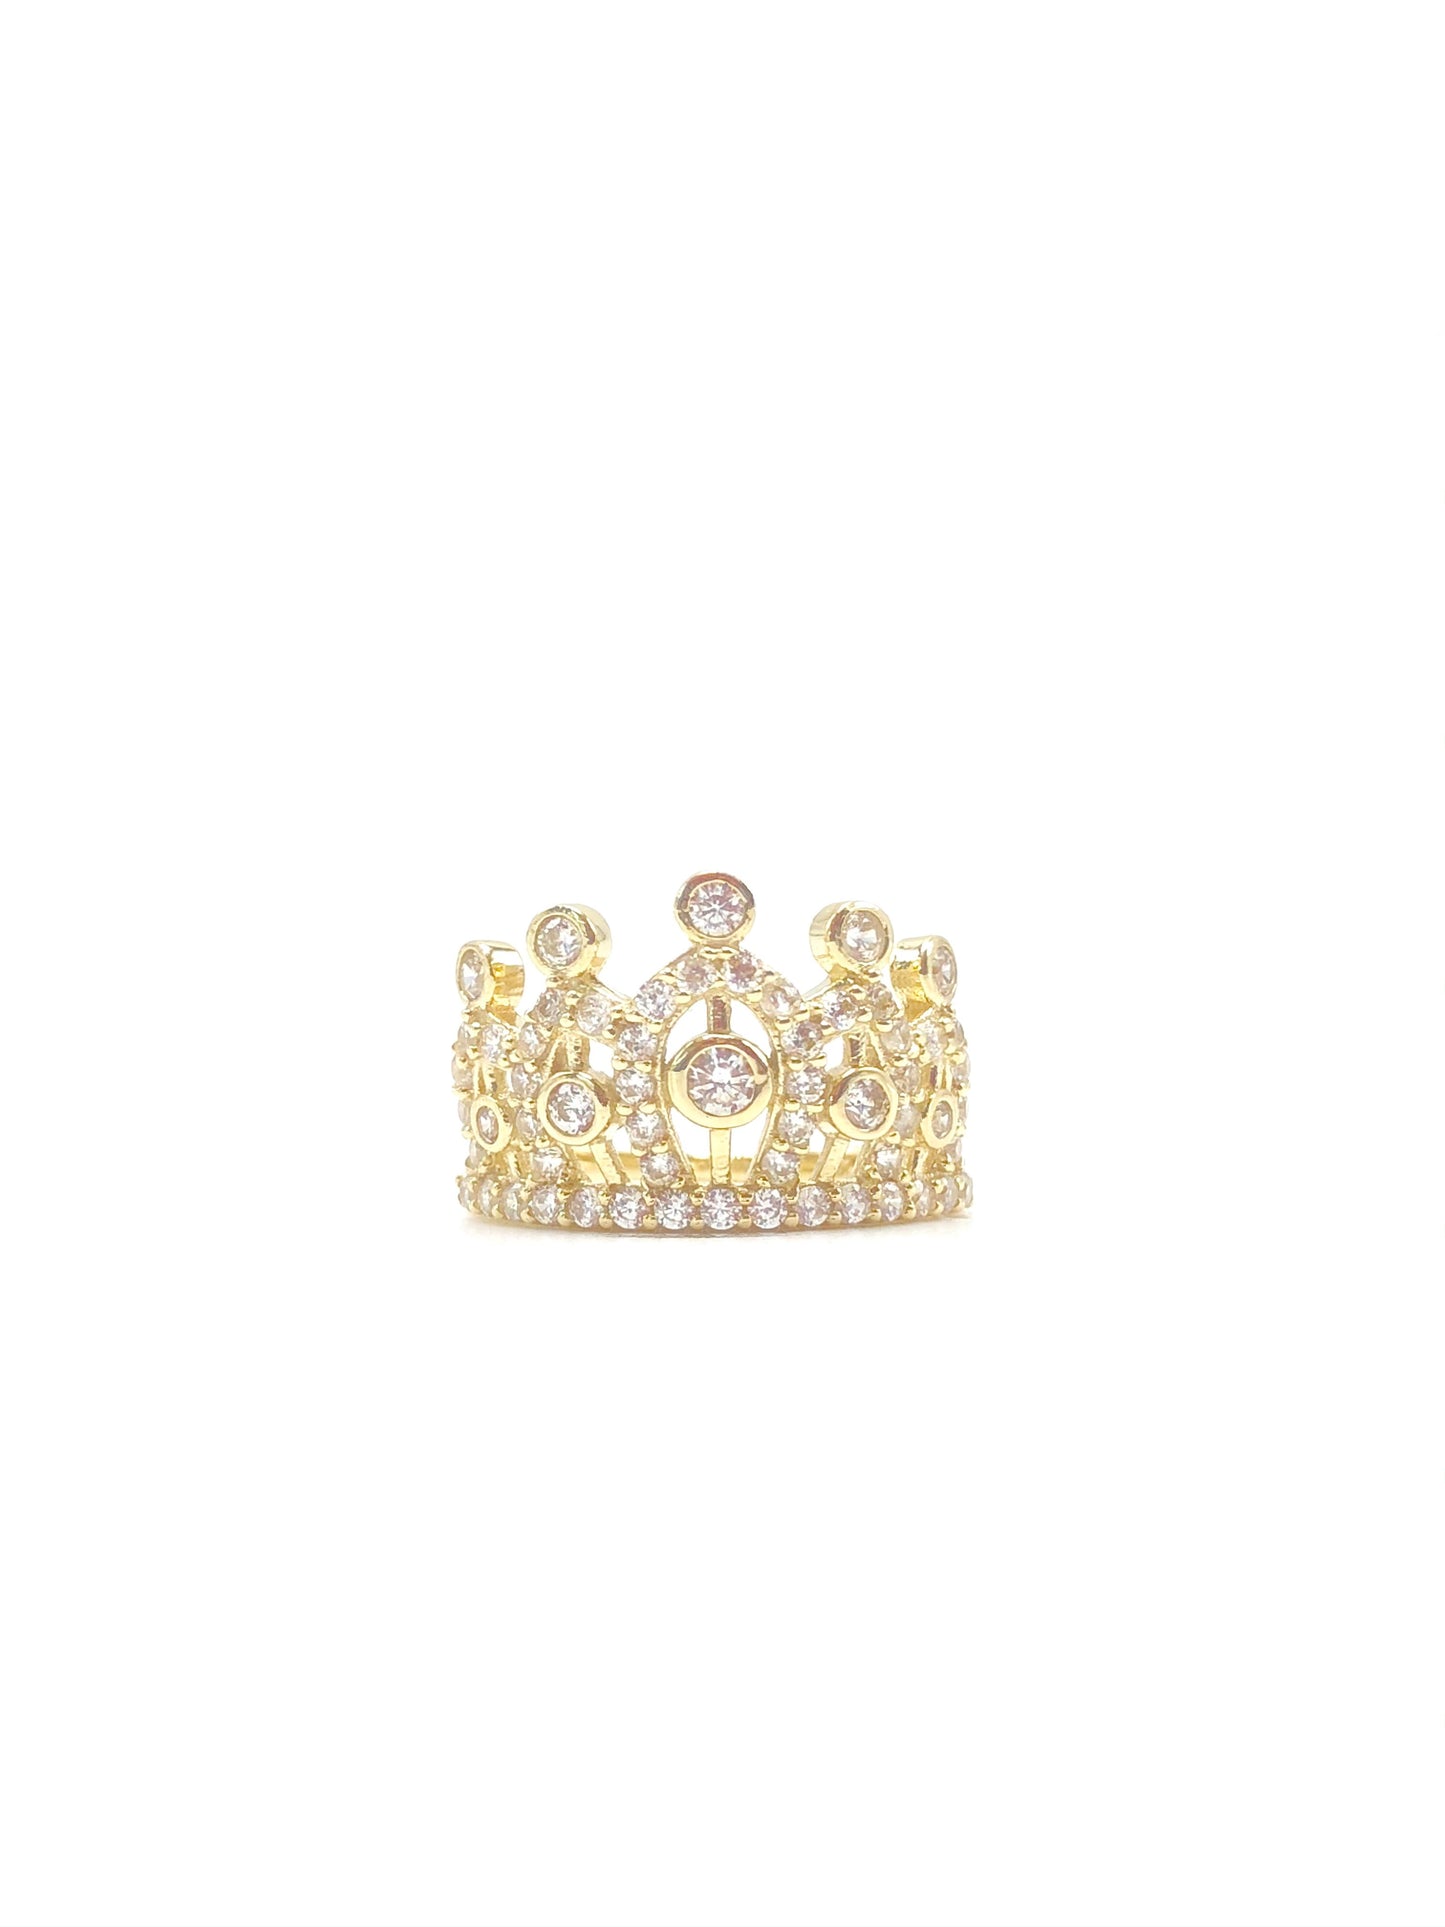 10K Yellow Gold Princess Crown Ring